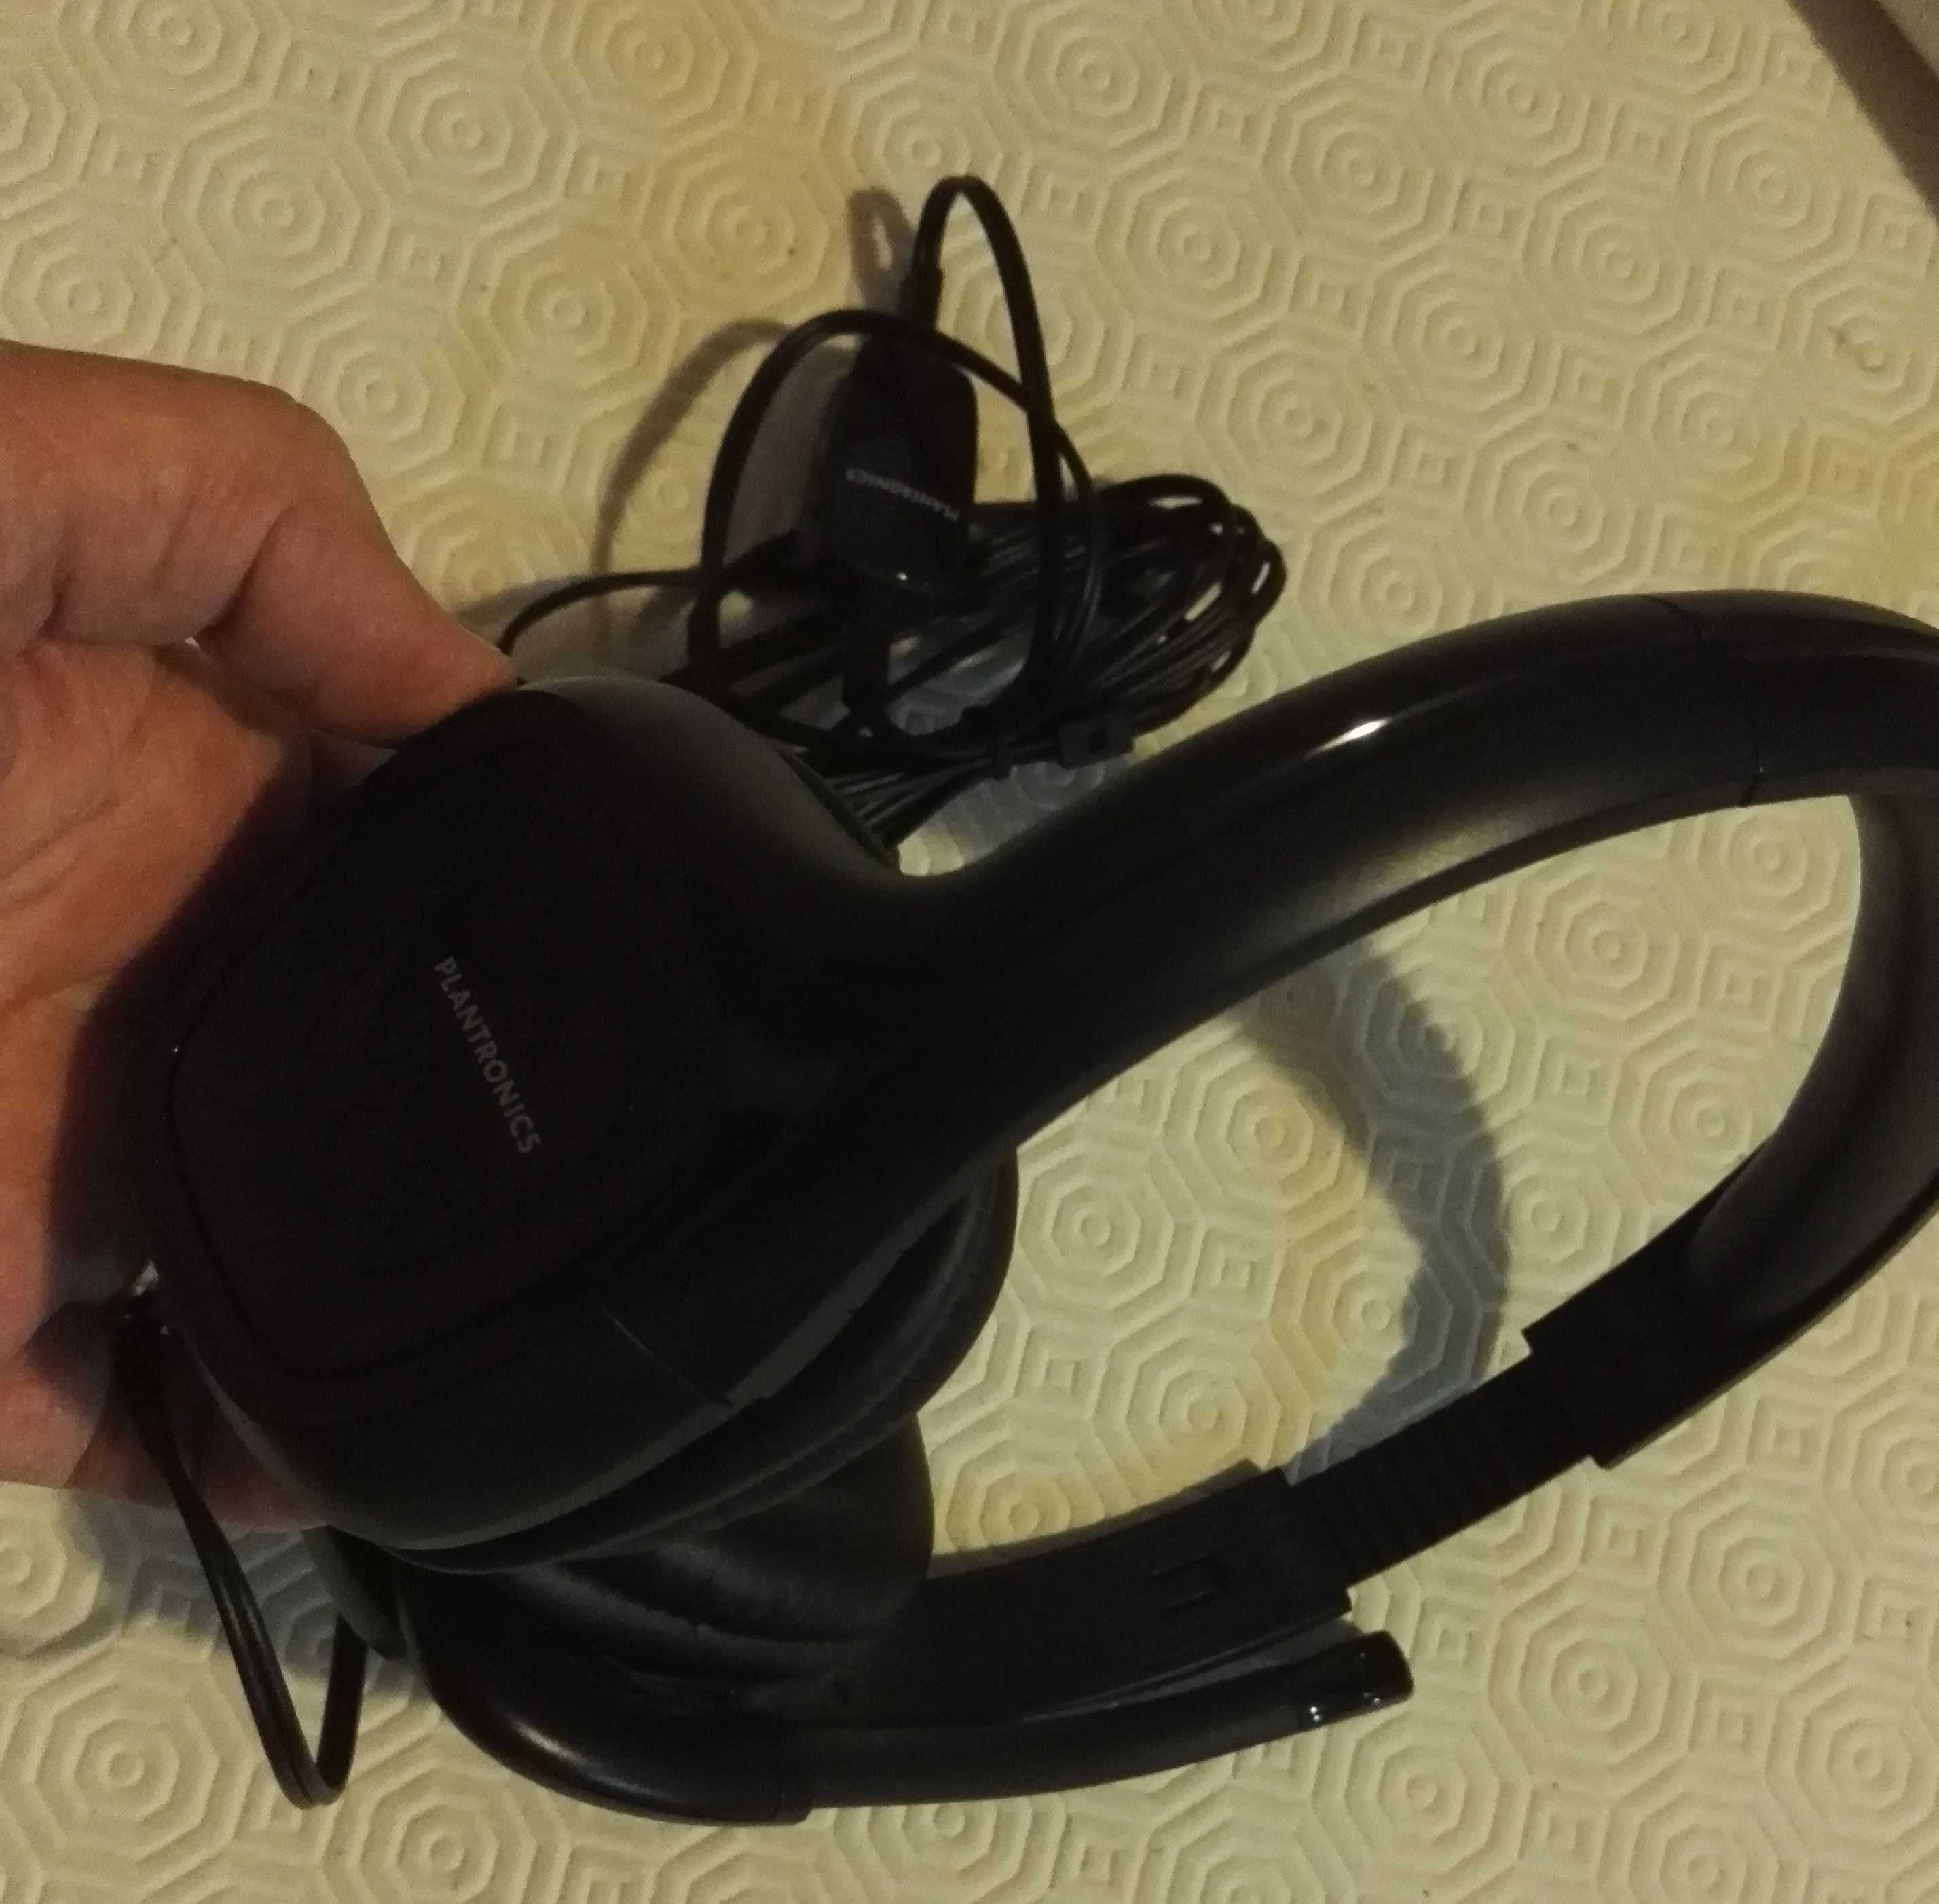 Headset da Plantronics (como novos!)